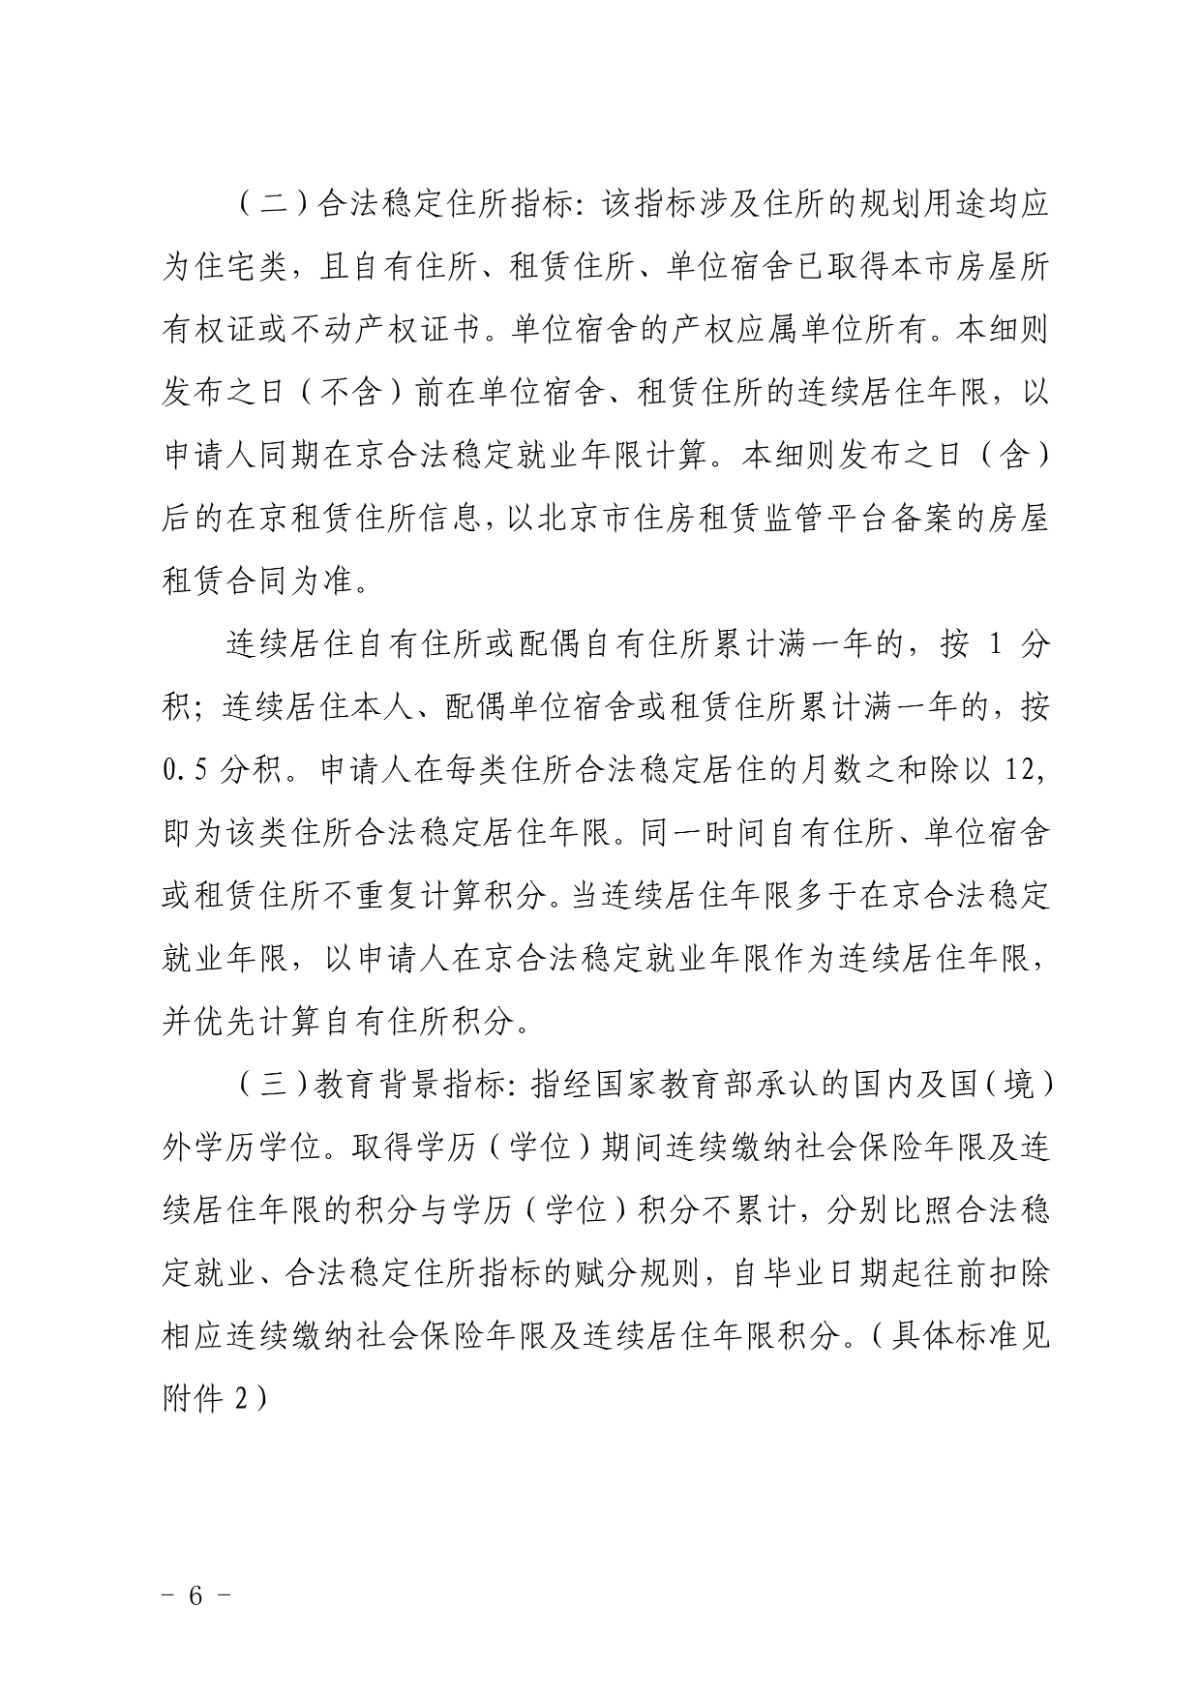 北京新版积分落户政策征求意见稿全文-中国网地产